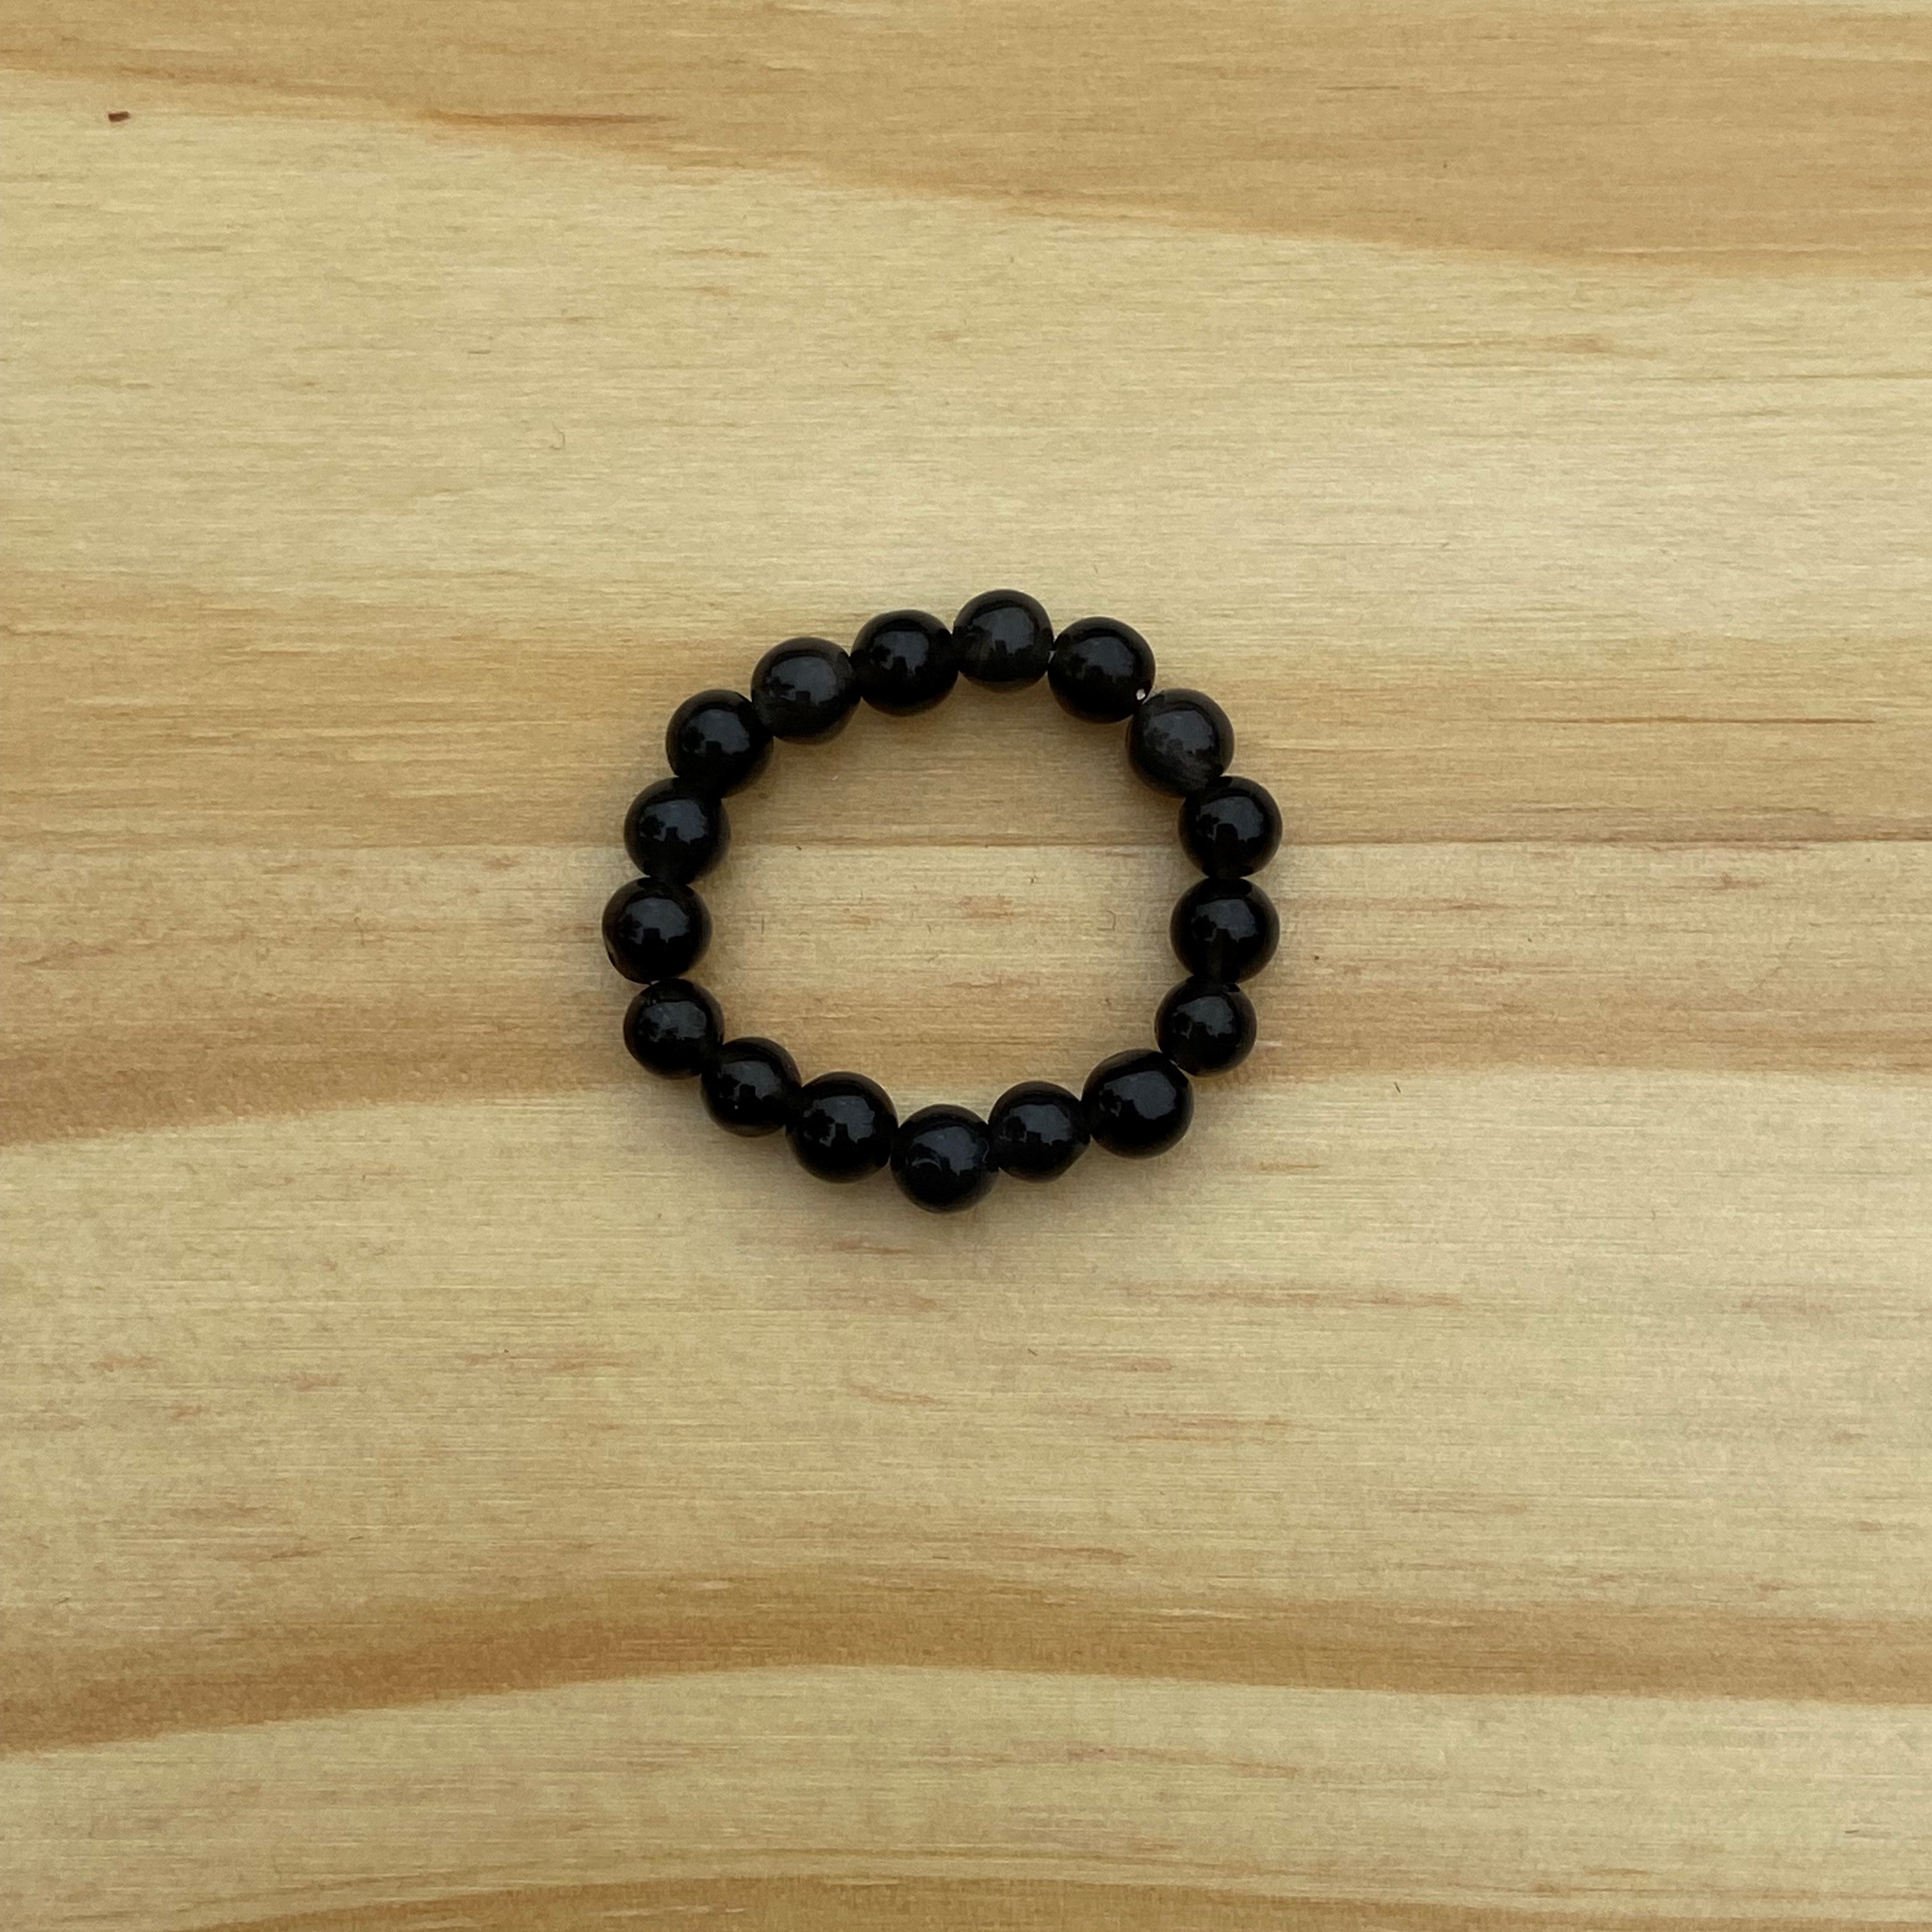 Gemstone Stretch Ring - Black Obsidian